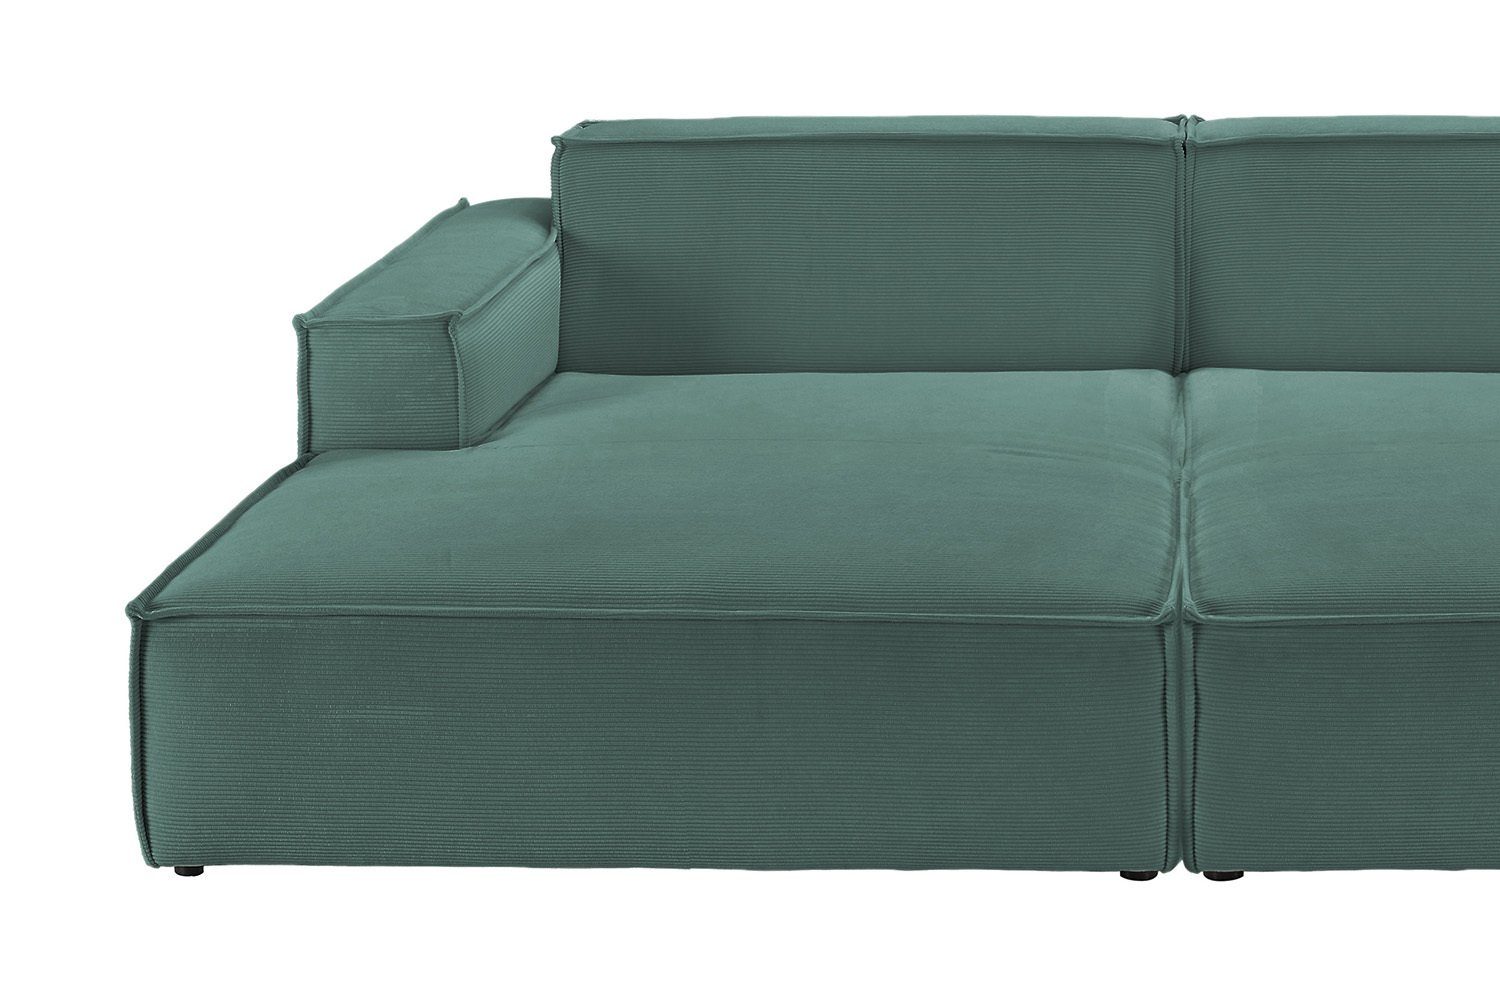 SAMU, Feincord KAWOLA Big-Sofa Farben grün Sofa verschiedene